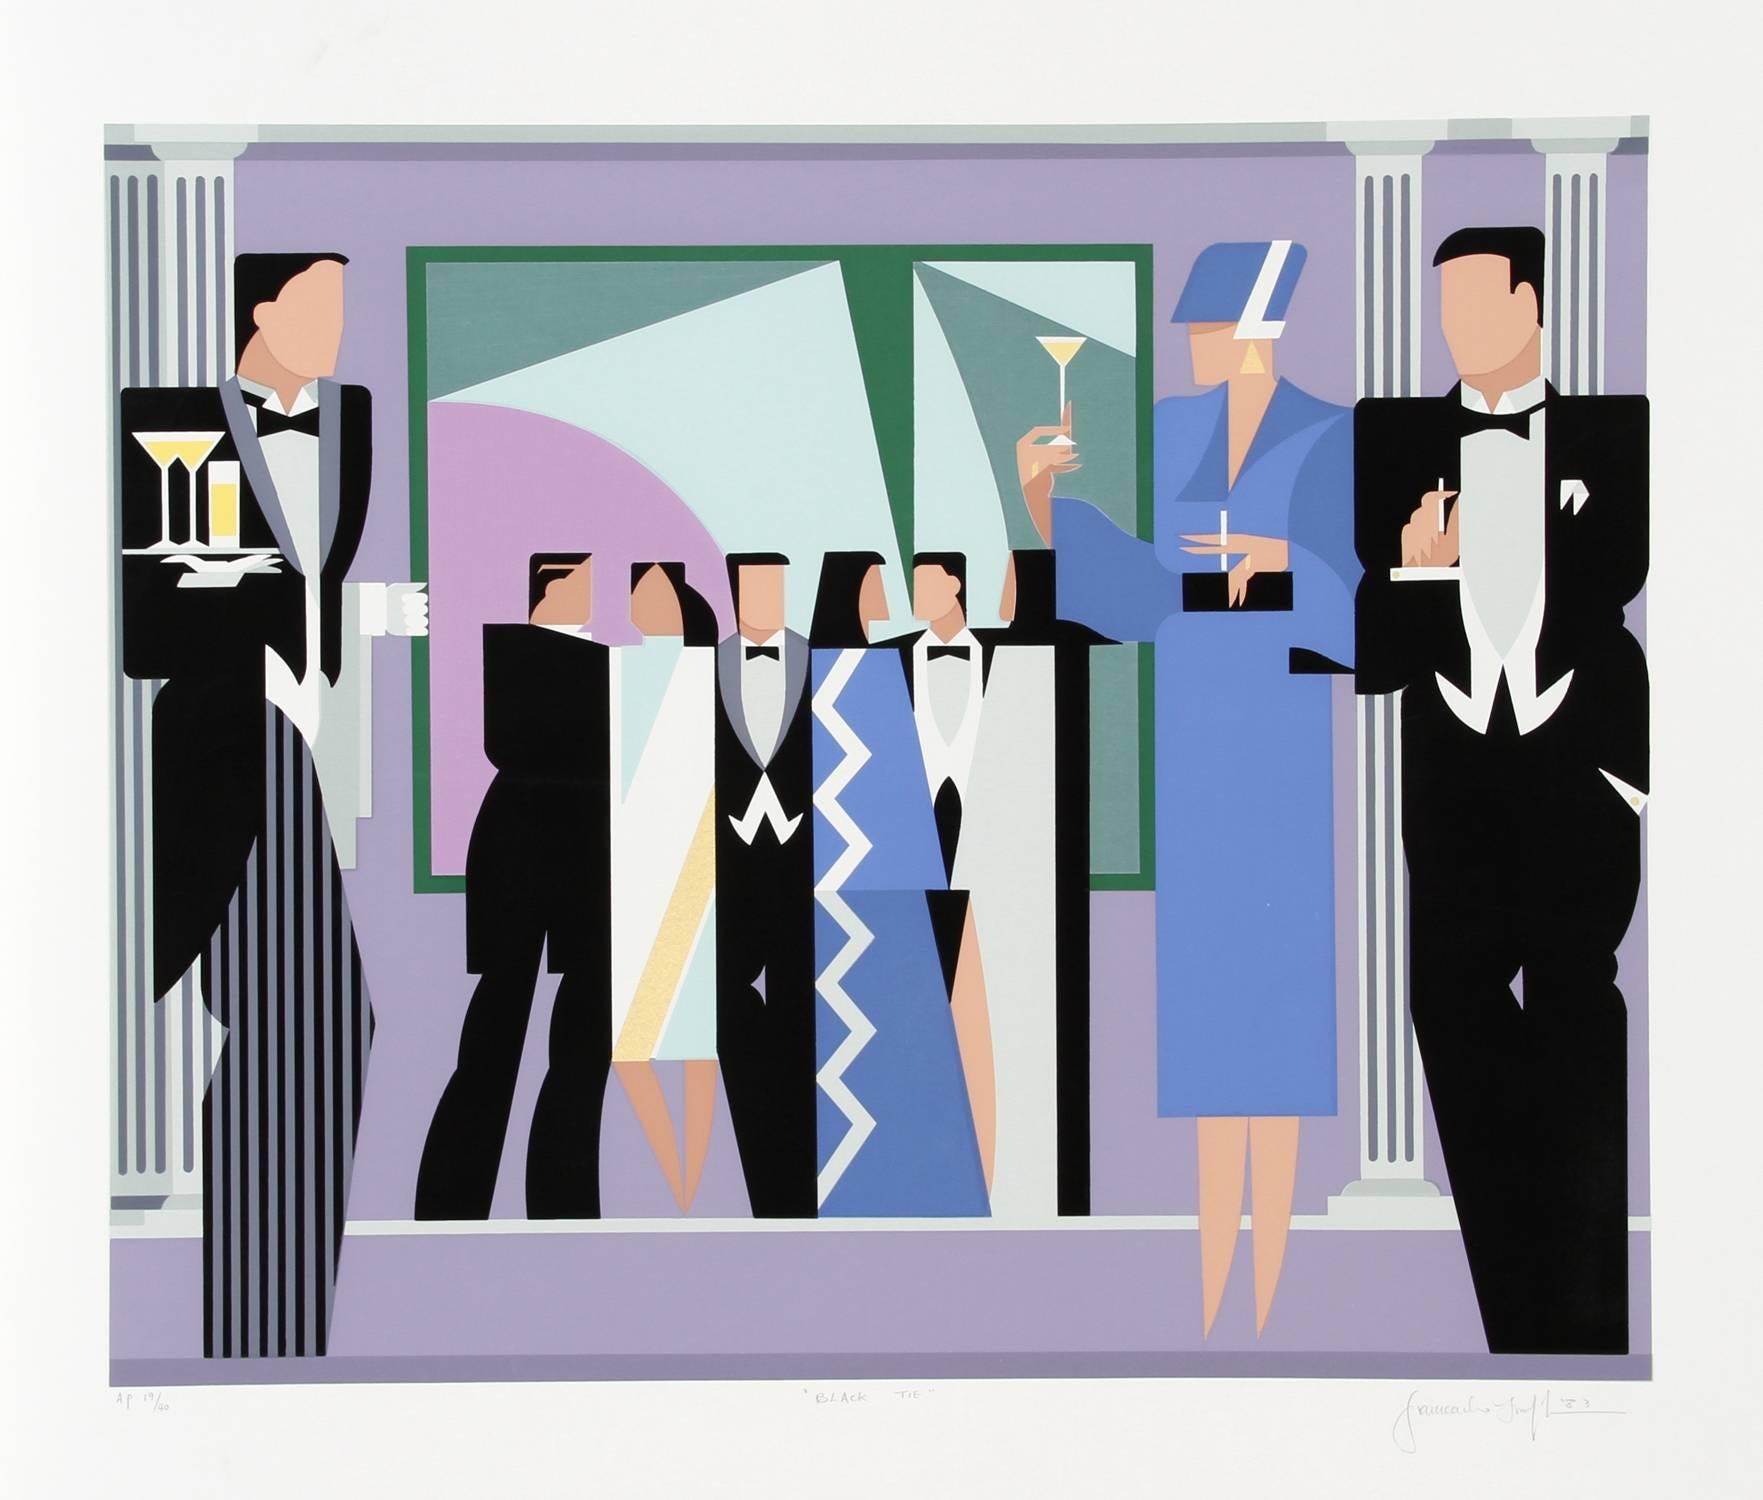 Inspiriert von Kubismus und Futurismus, erinnert Giancarlo Impiglias Druck einer schwarzen Krawatte auch an das Art déco. Mit den scharfen Linien, dem schlanken Körperbau und der minimalistischen Gestaltung des Innenraums idealisiert der Künstler